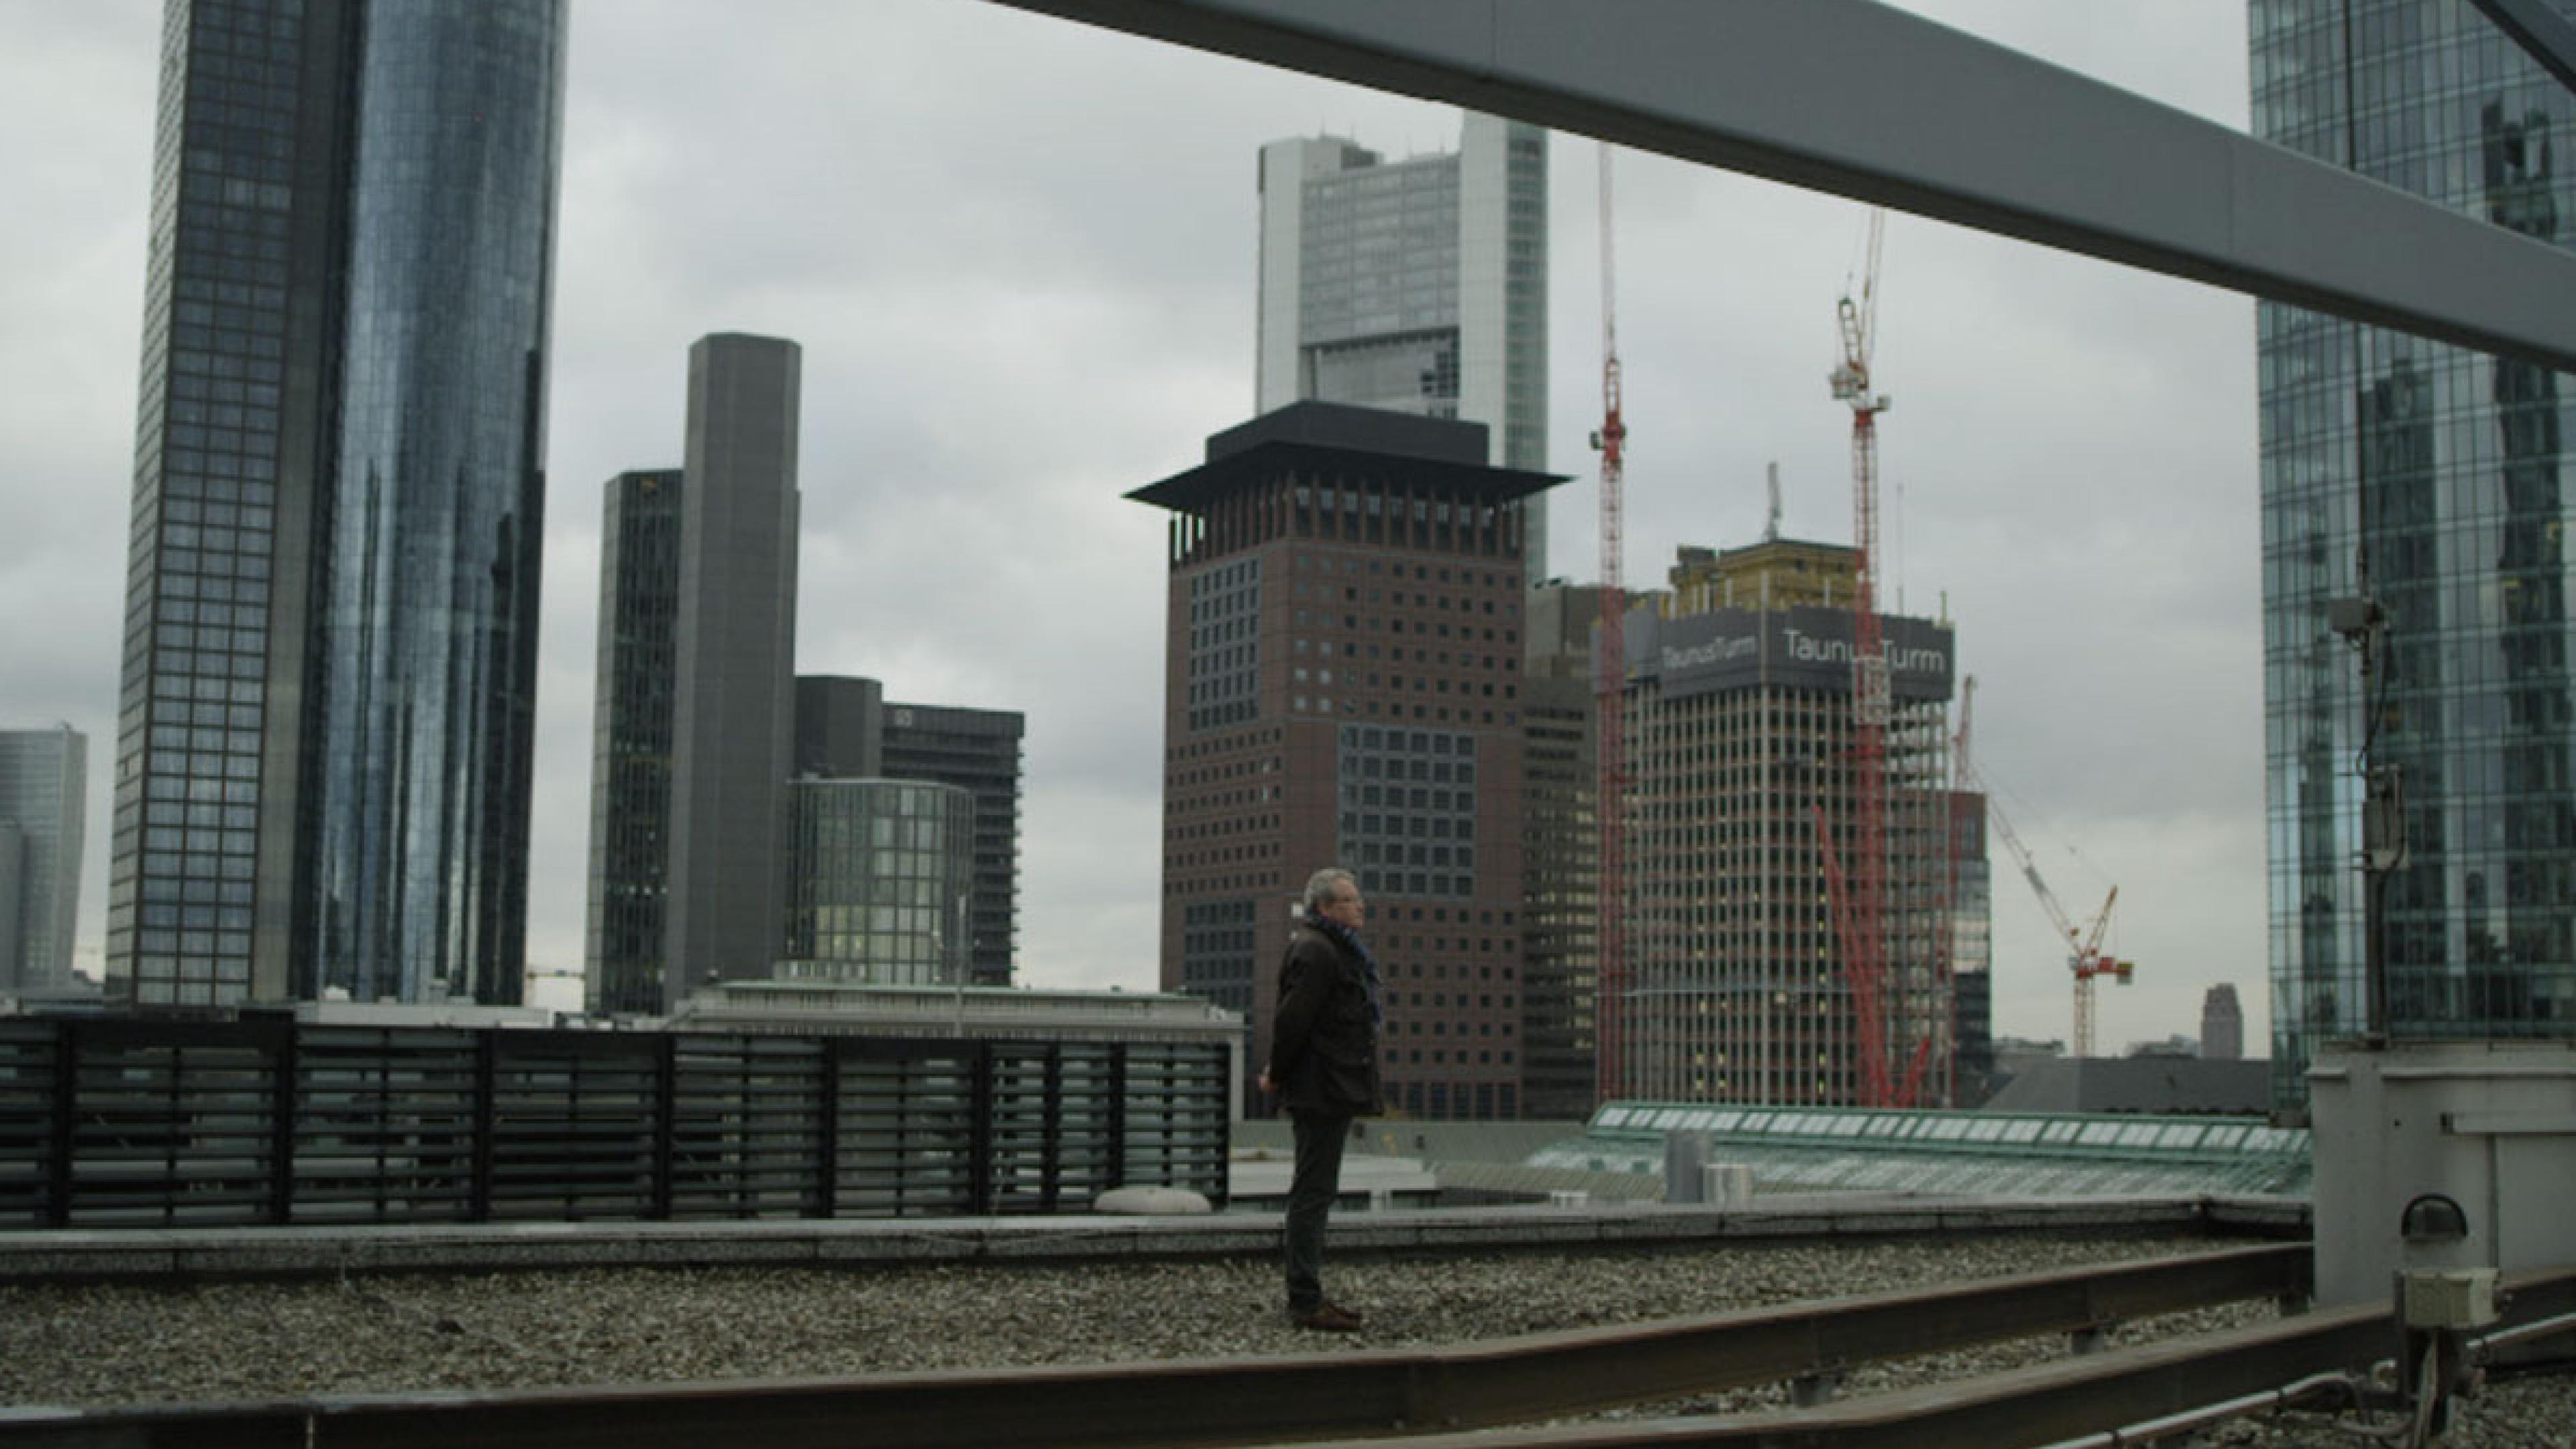 Ein Mann steht auf einem Gebäudedach inmitten der Skyline von Frankfurt.